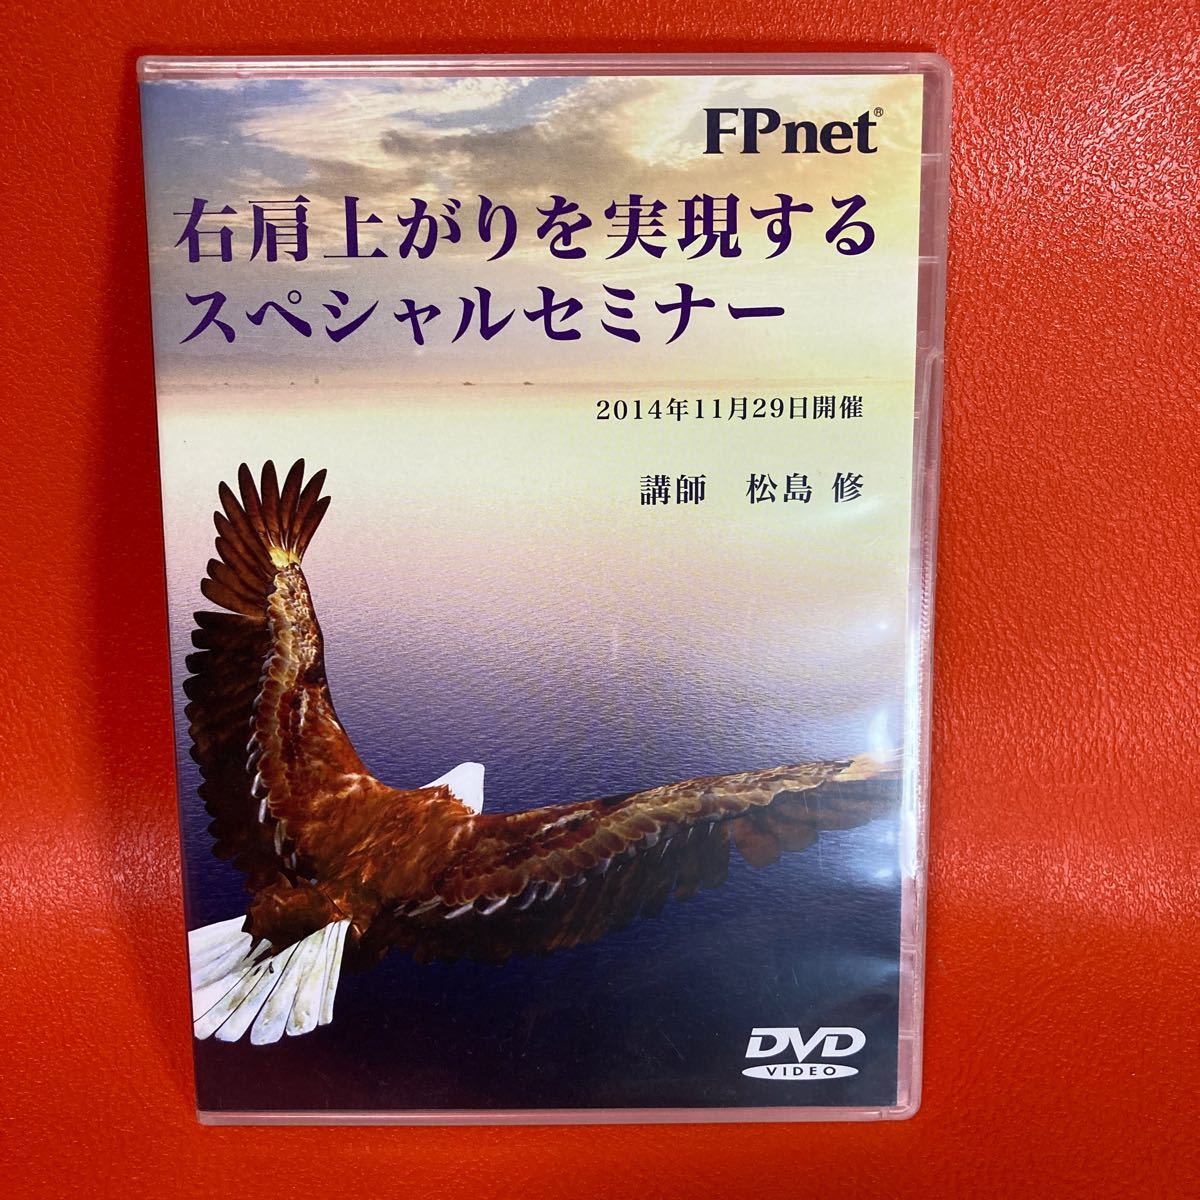 FPnet 松島修セミナー DVD 右肩上がりを実現するスペシャルセミナー★本物と偽物を見分けることが成功の秘訣